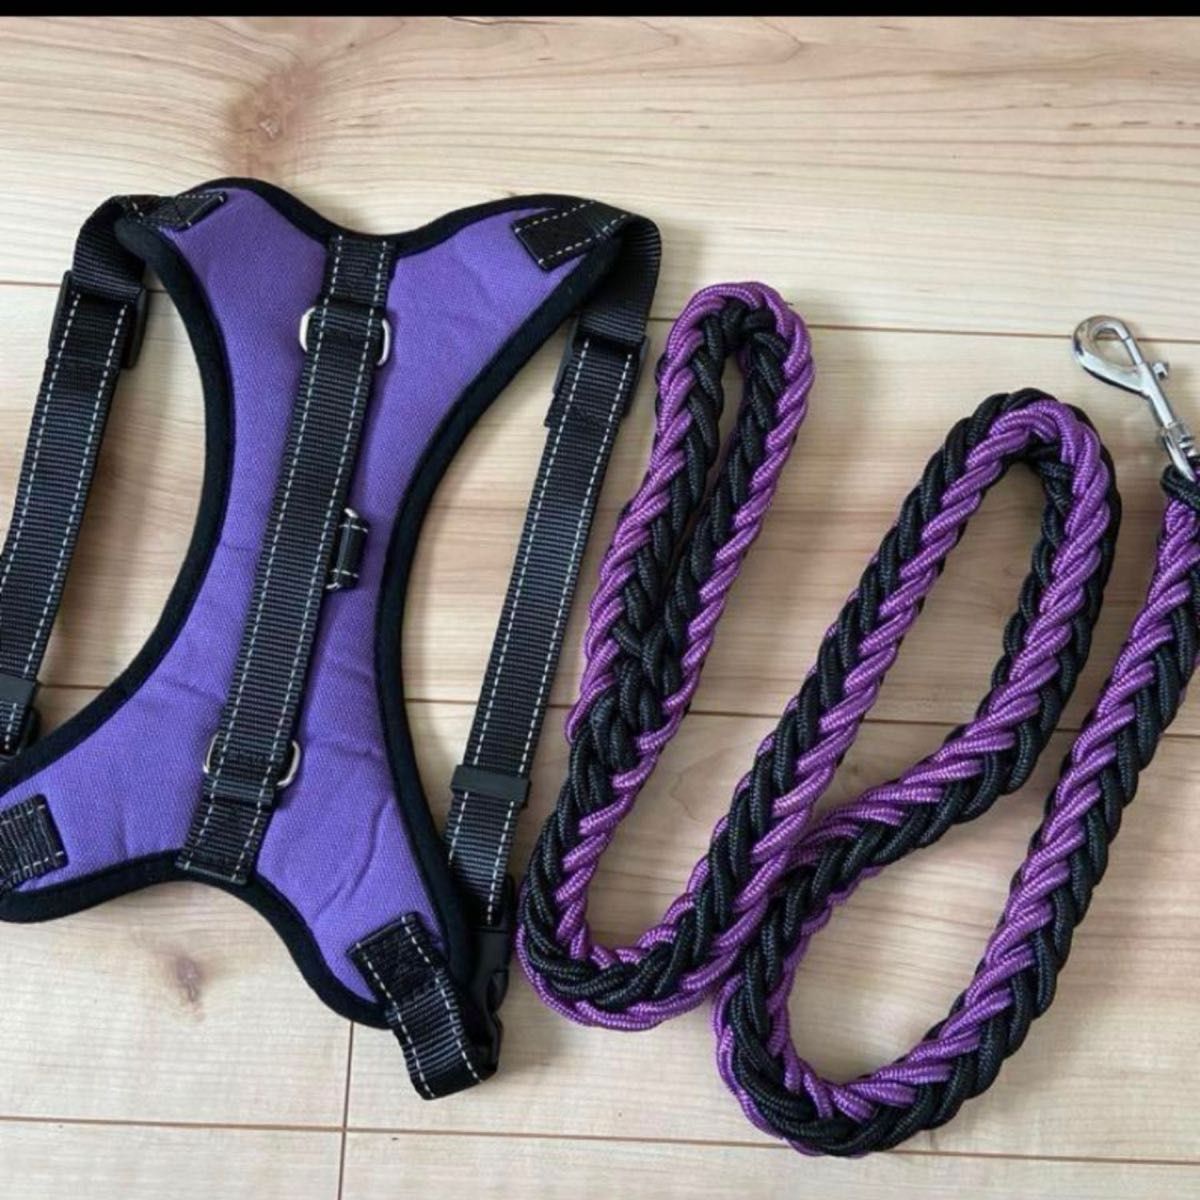 ハーネス&リード セット 大型犬 中型犬 L 紫